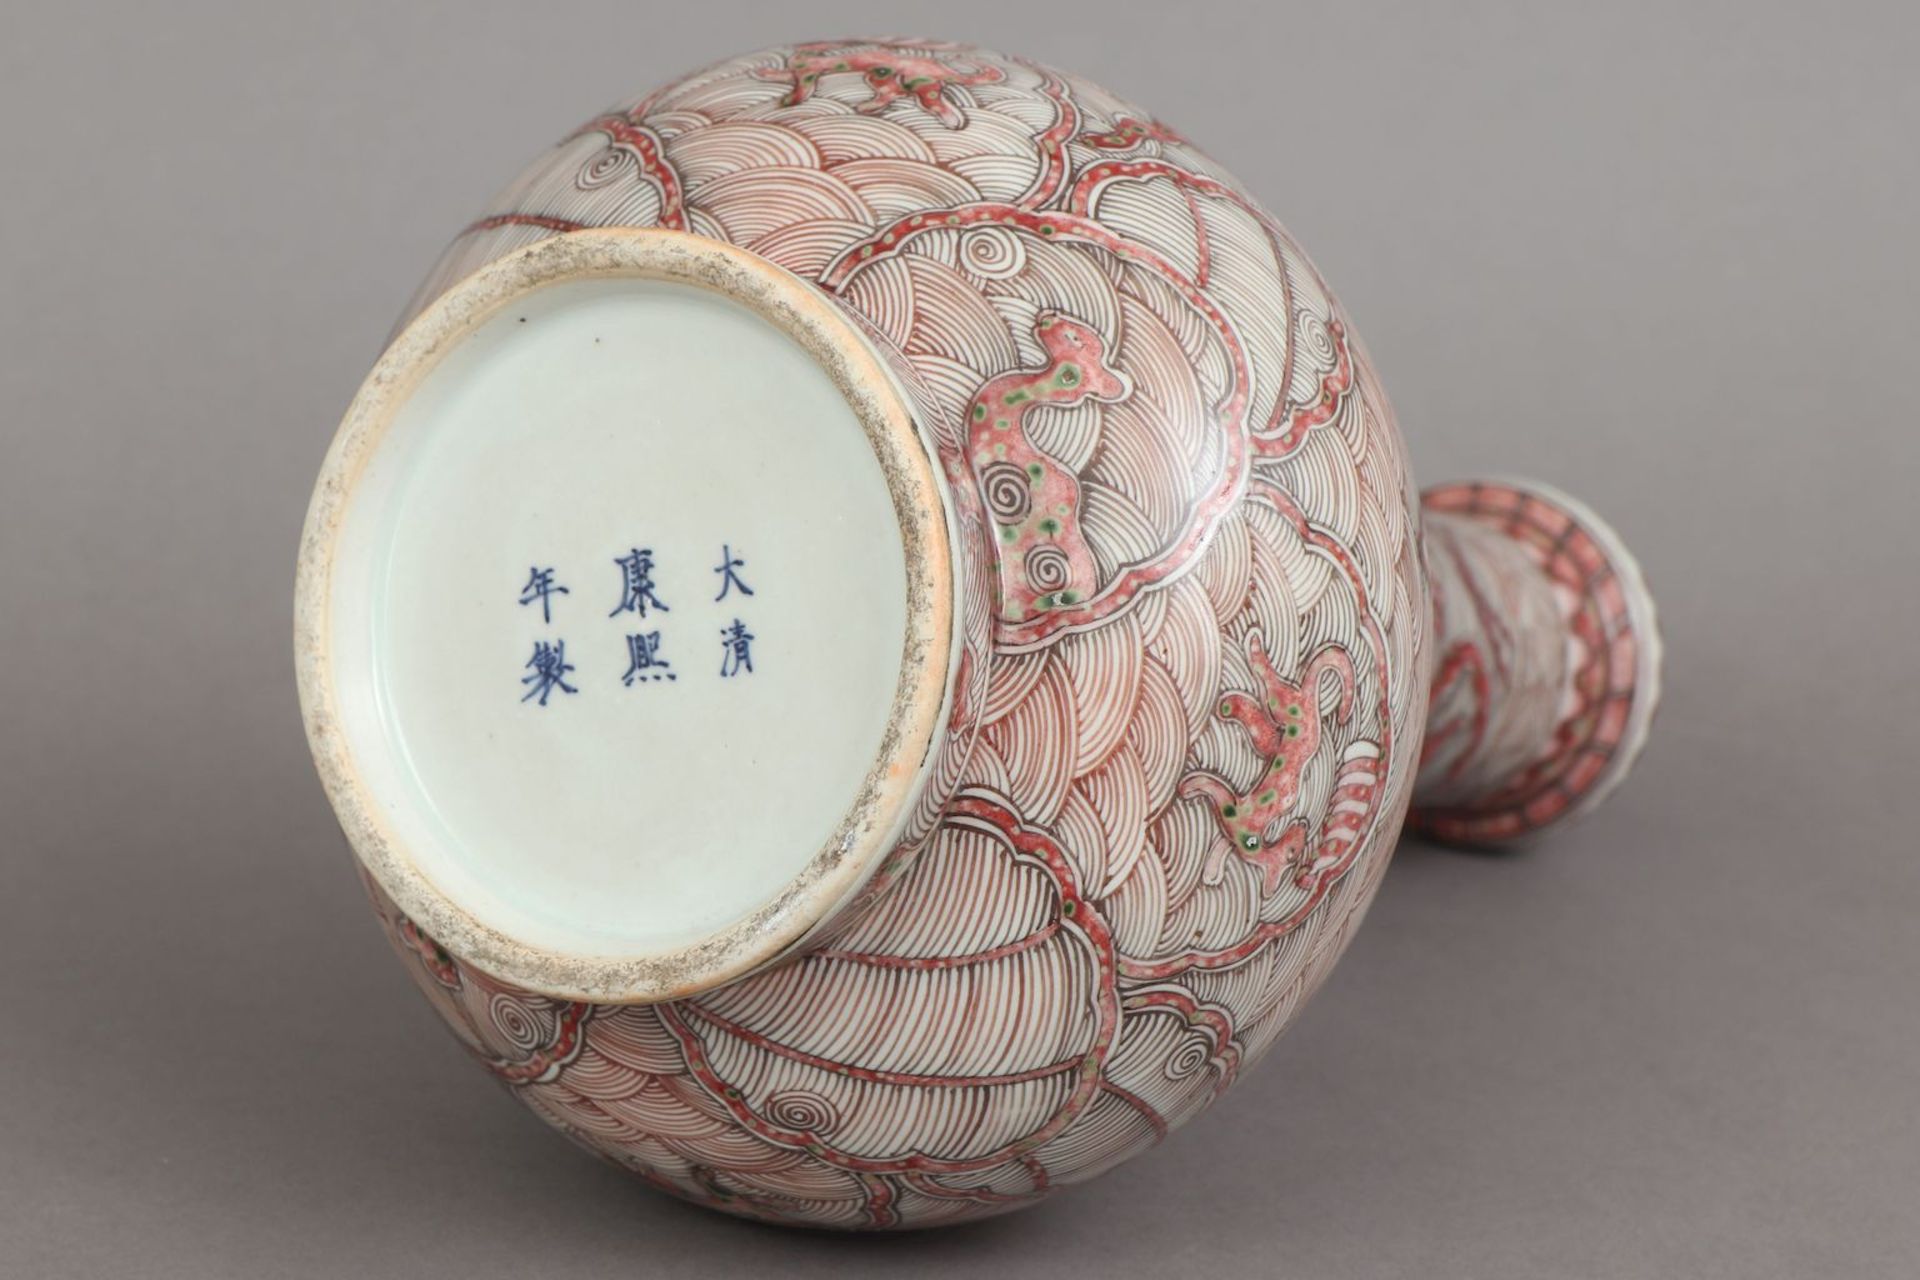 Chinesische Porzellanvase mit korallenrotem Drachendekor - Bild 5 aus 5